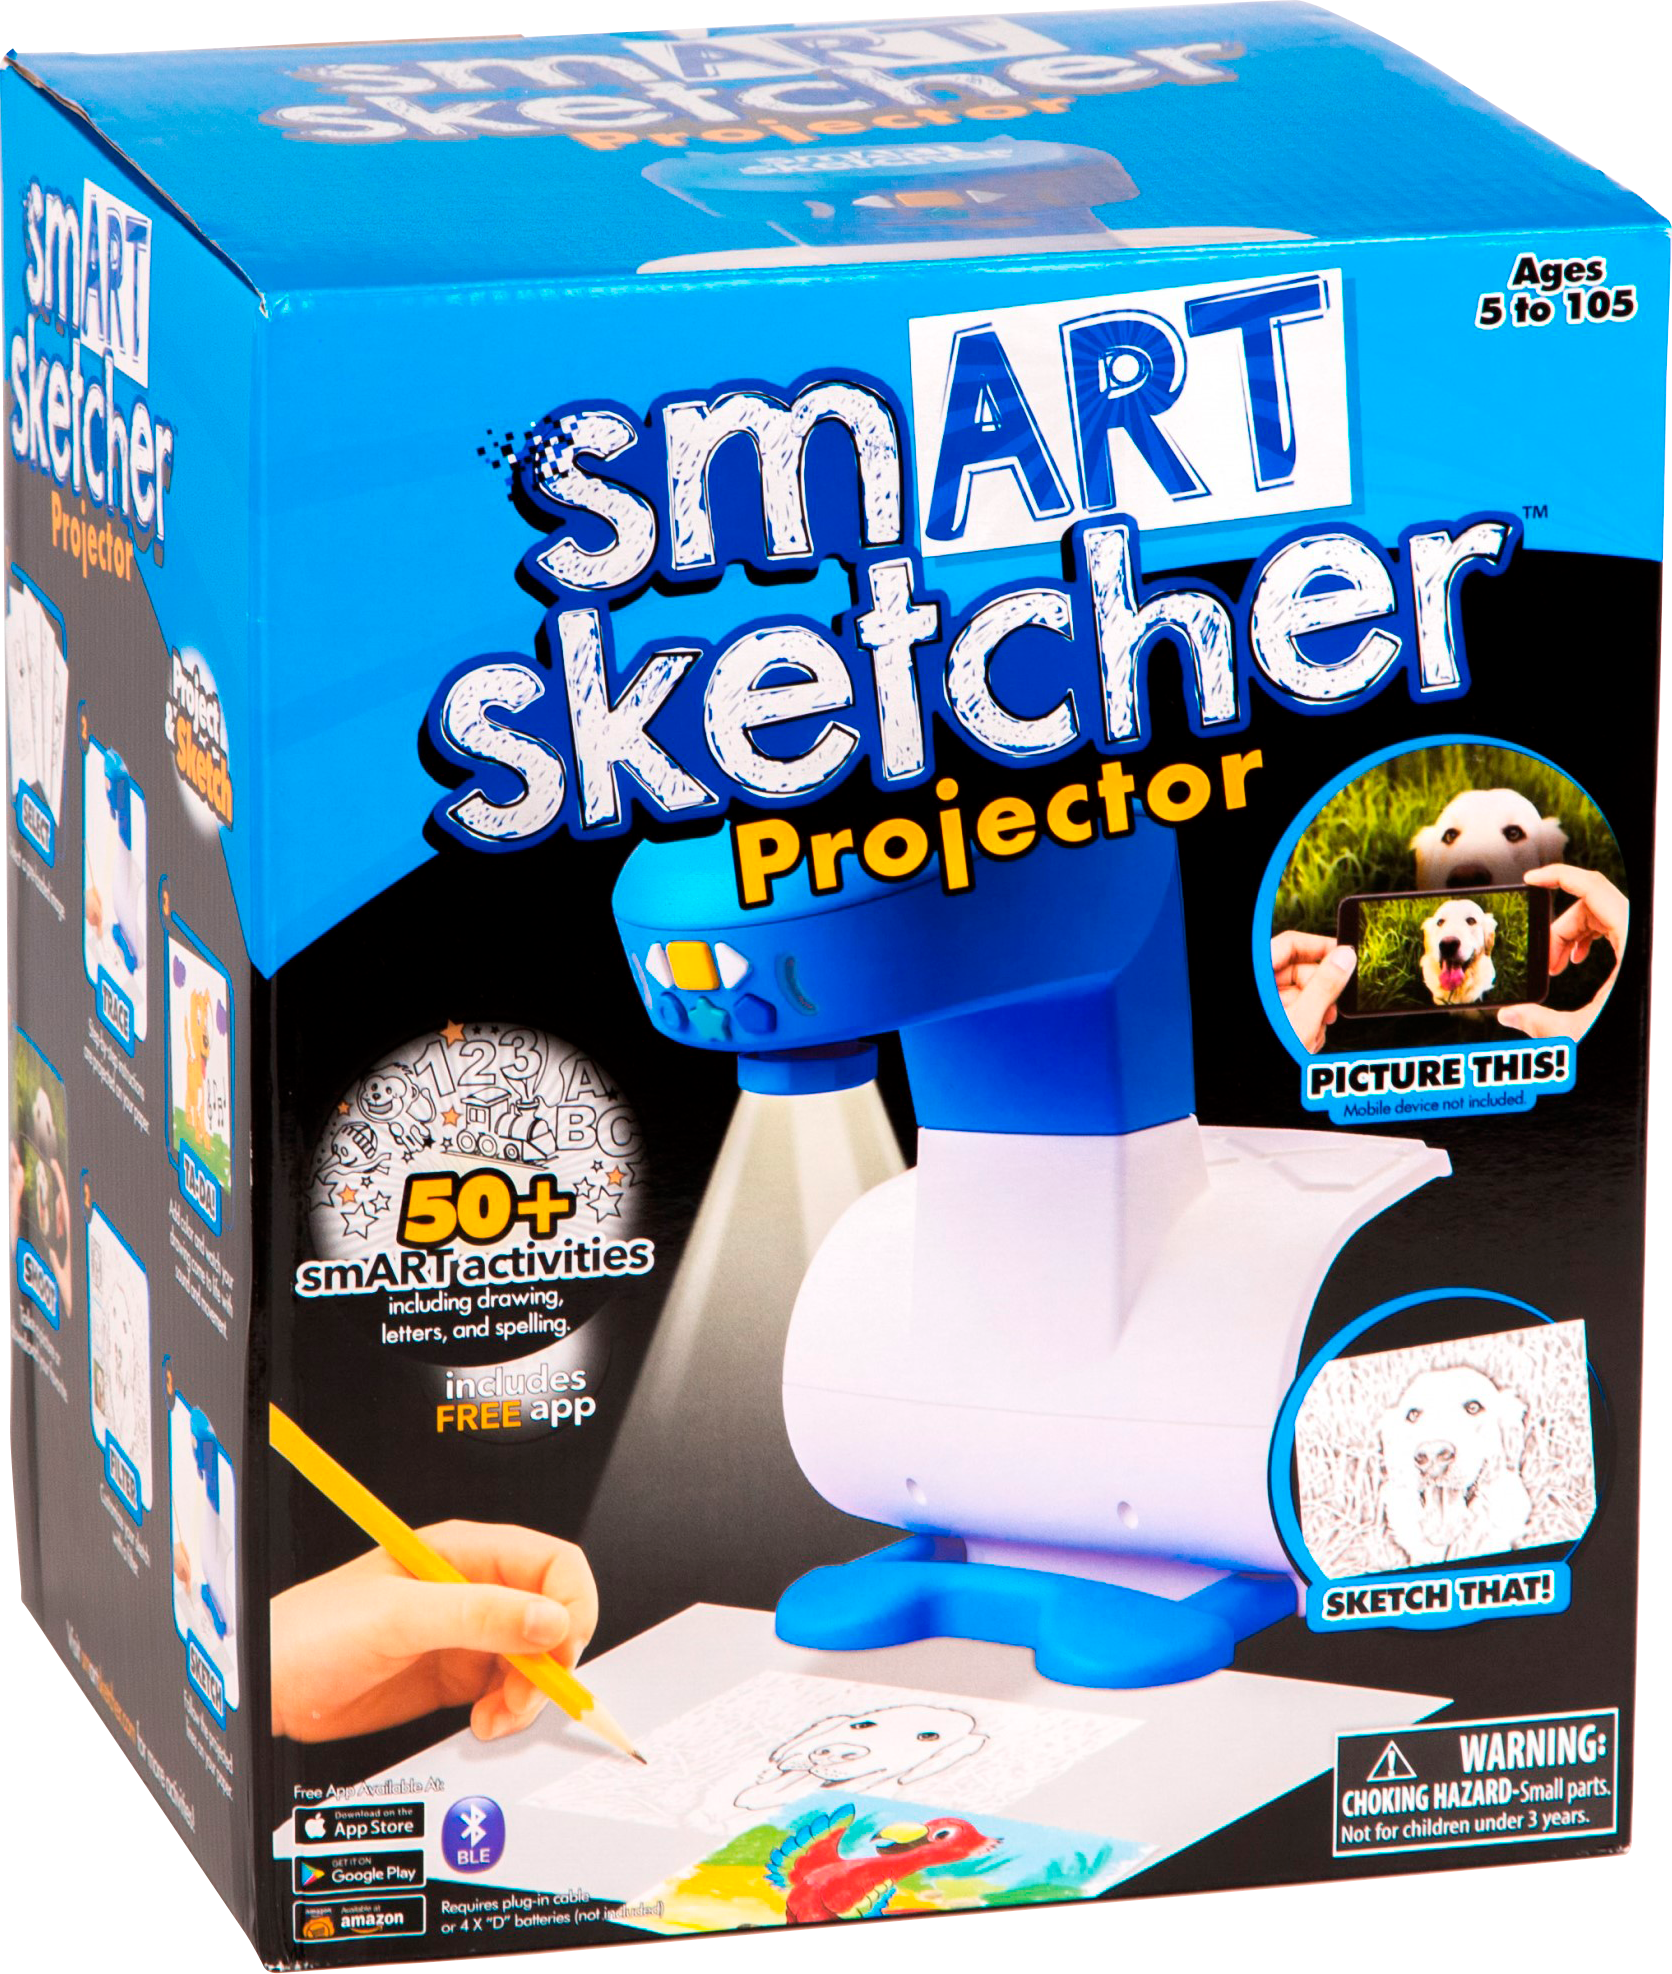 smart sketcher projector target